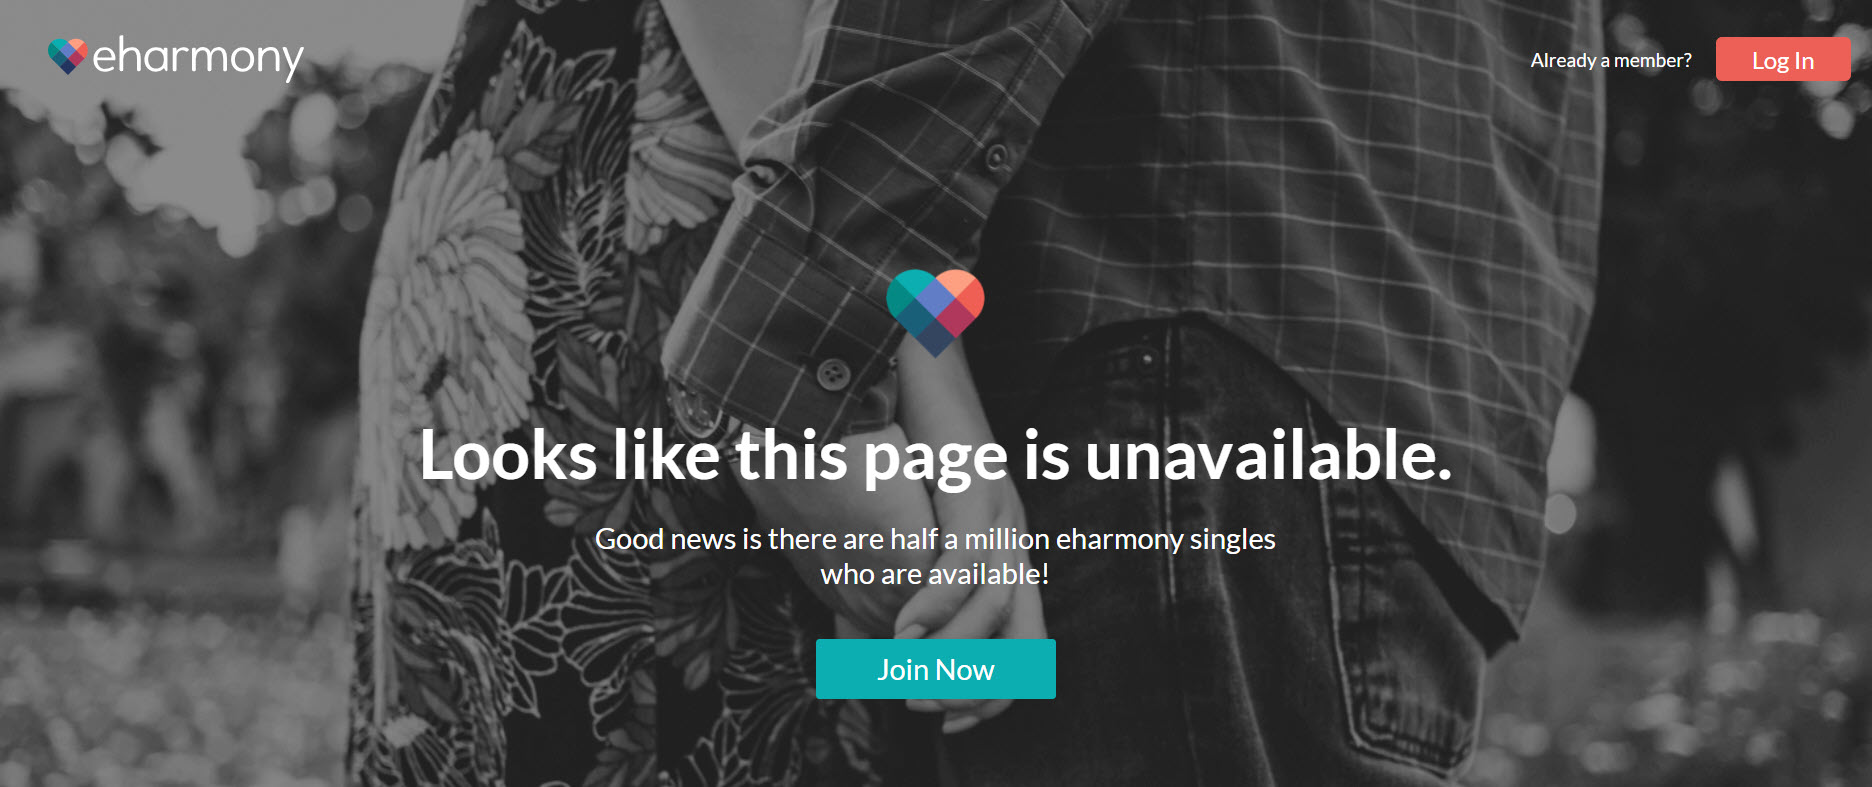 eharmony's 404 page